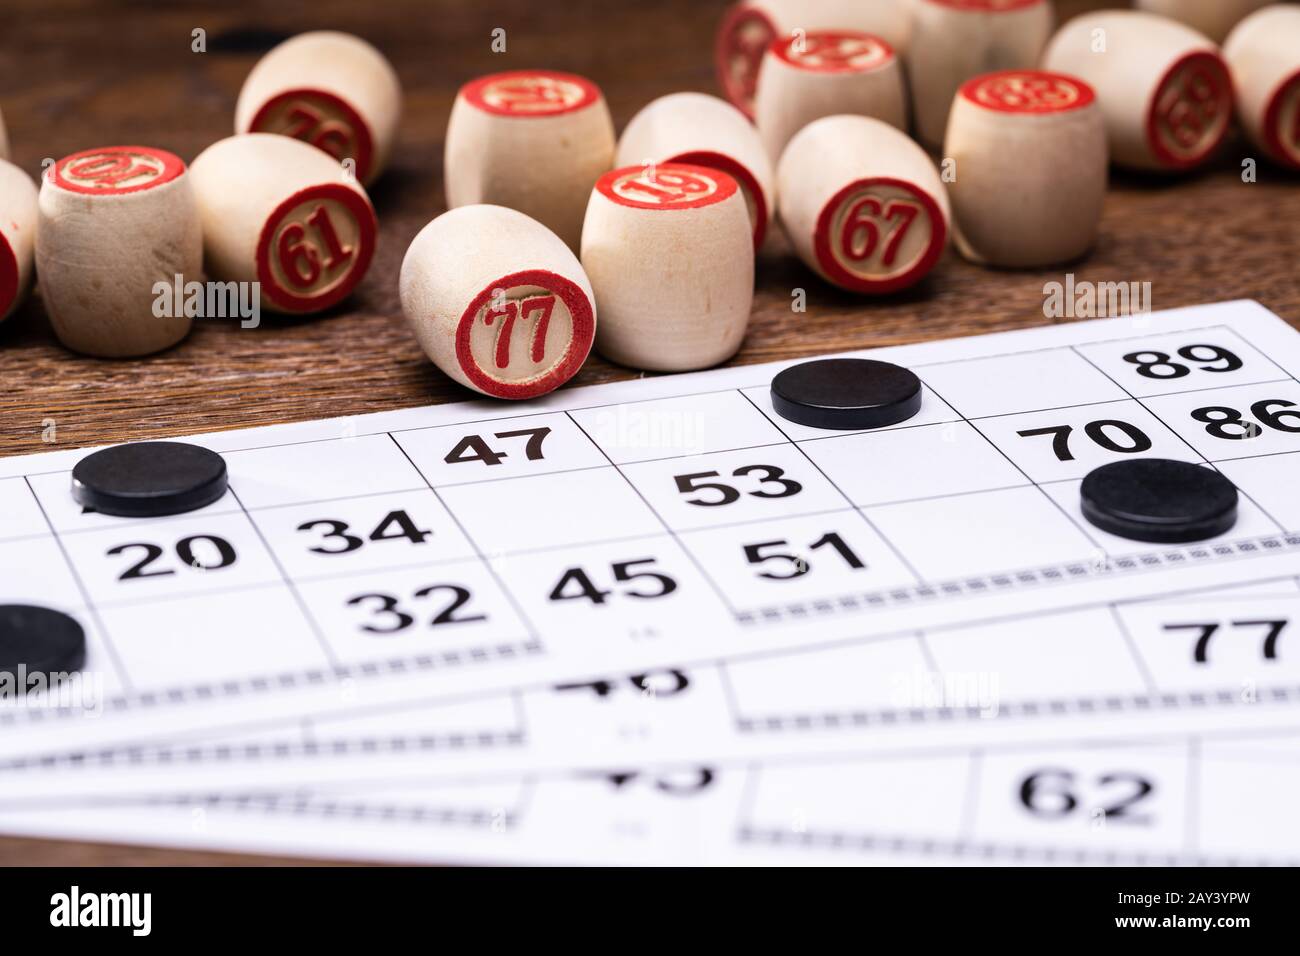 Juego De Lotto Con Cartas Y Barriles En La Mesa Foto de stock